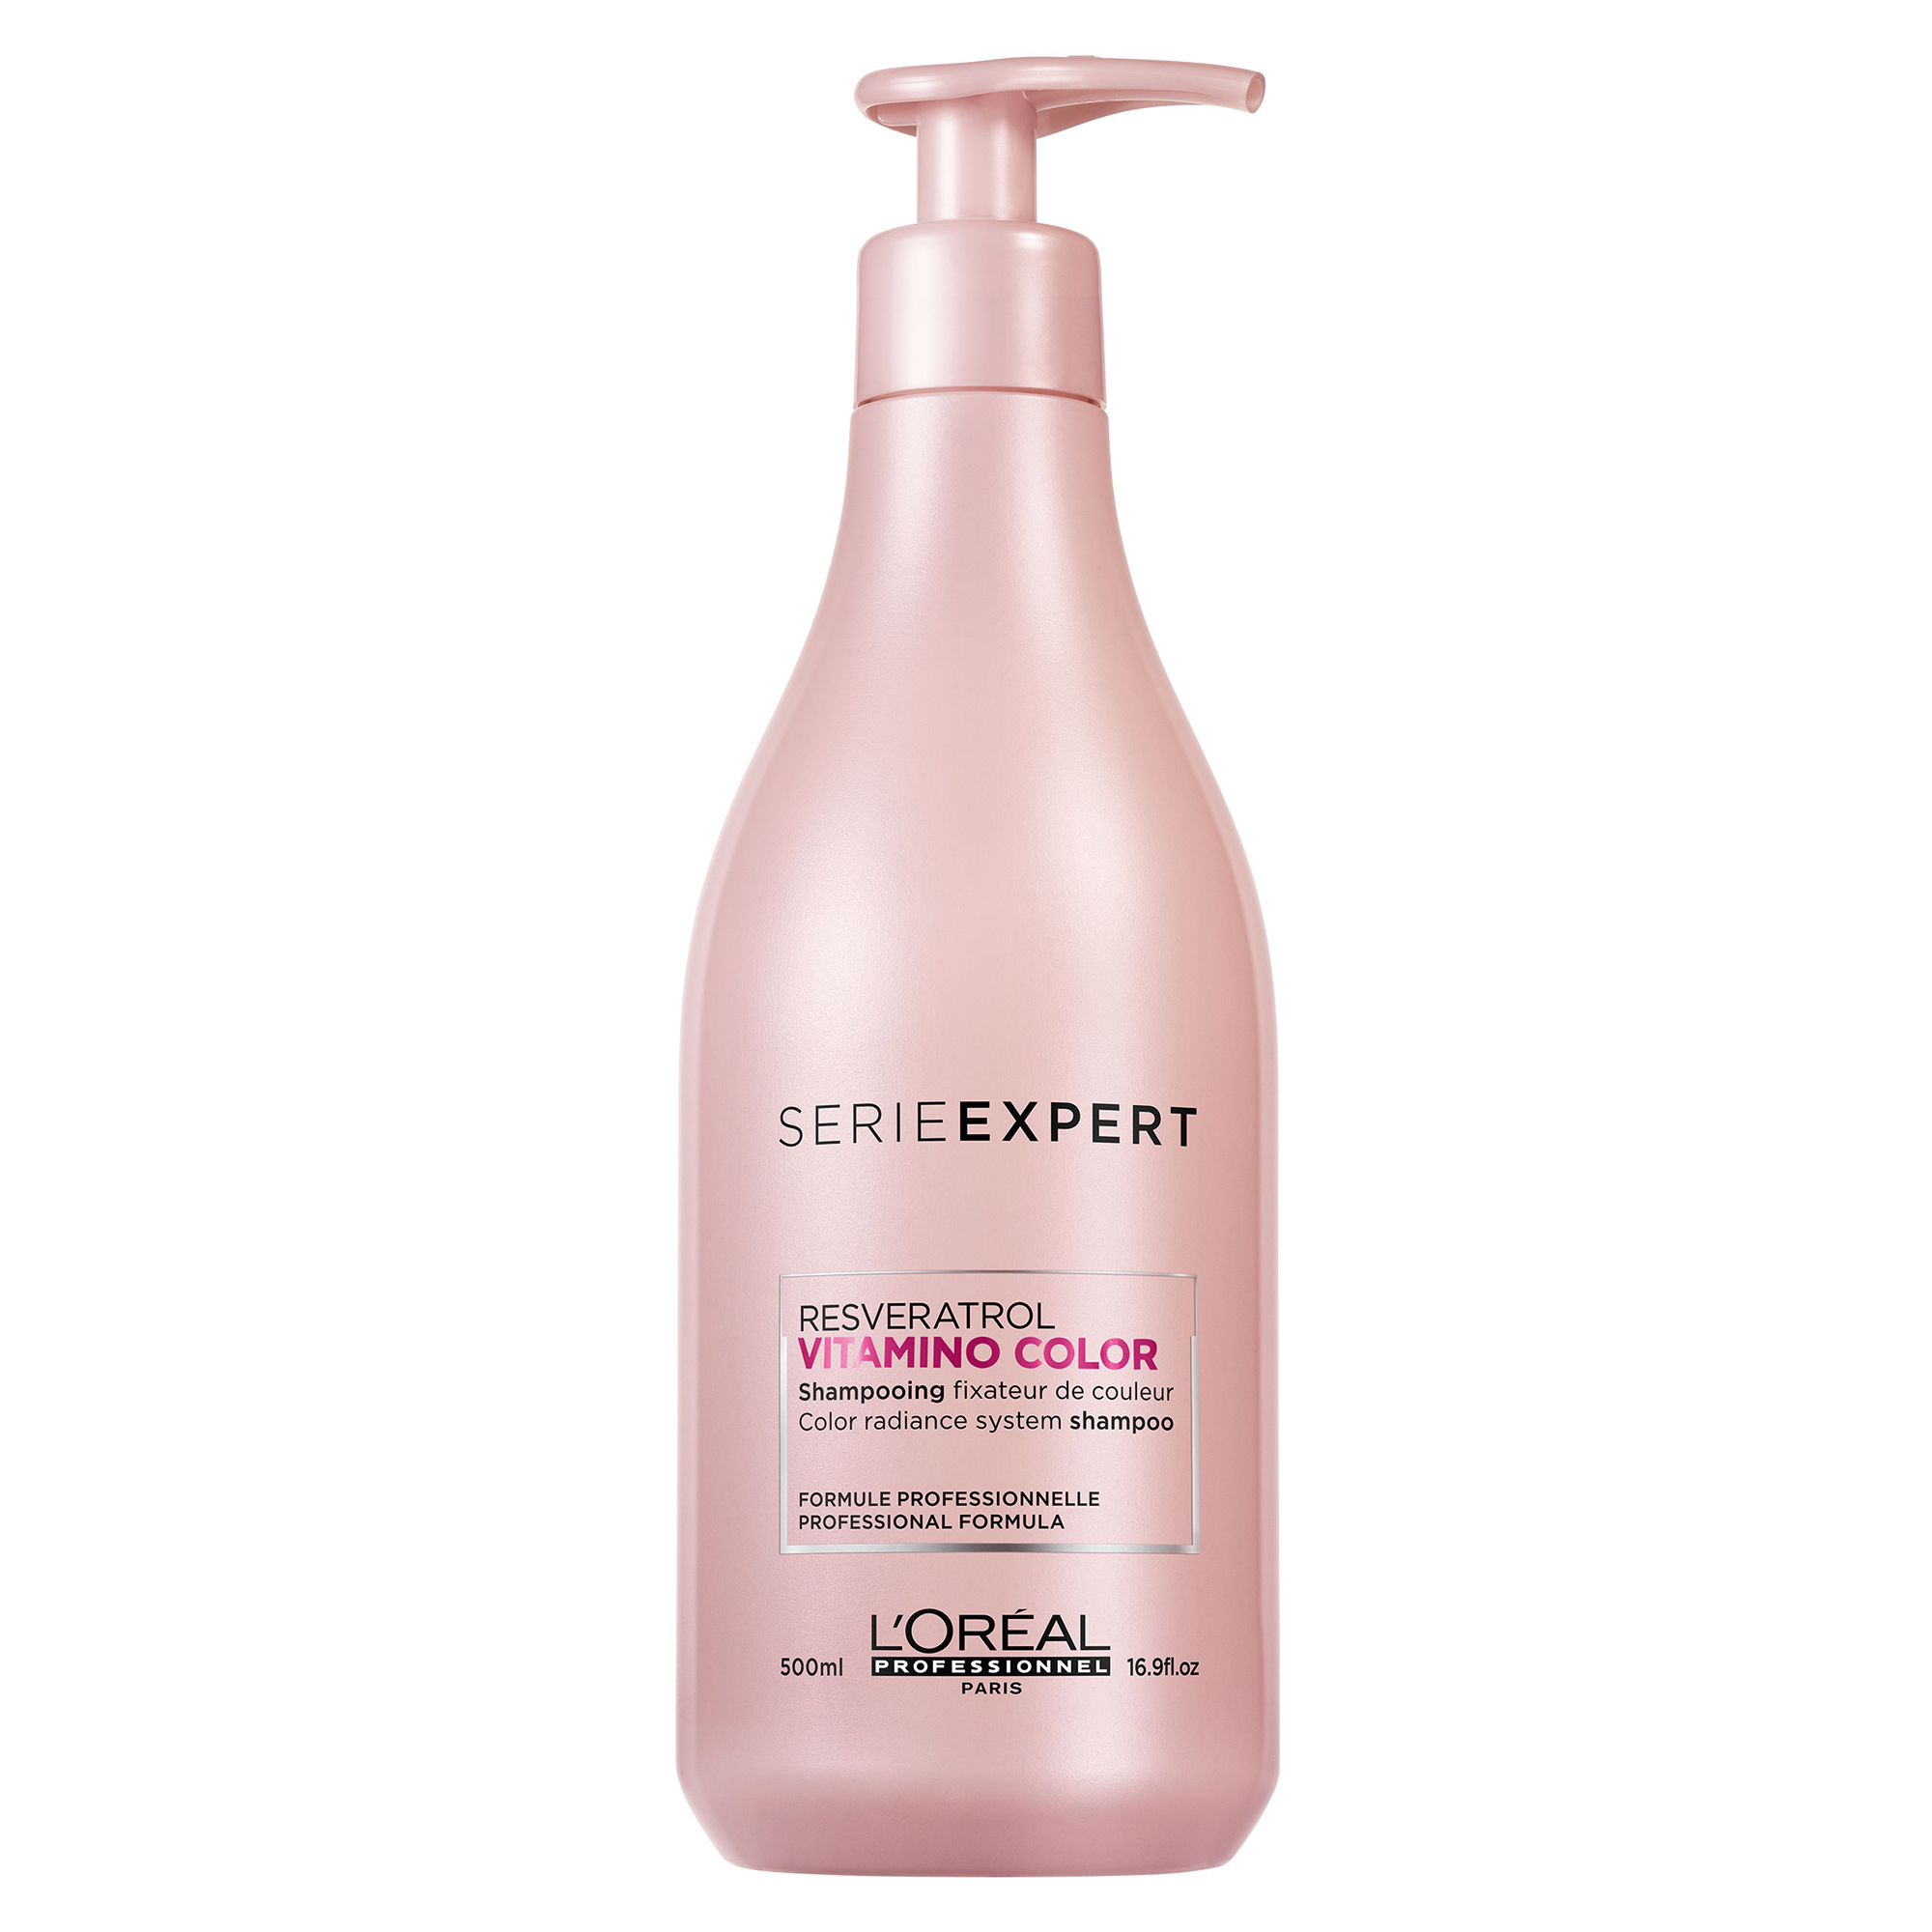 L'Oréal Professionnel Vitamino Color Shampoo, 500 ml